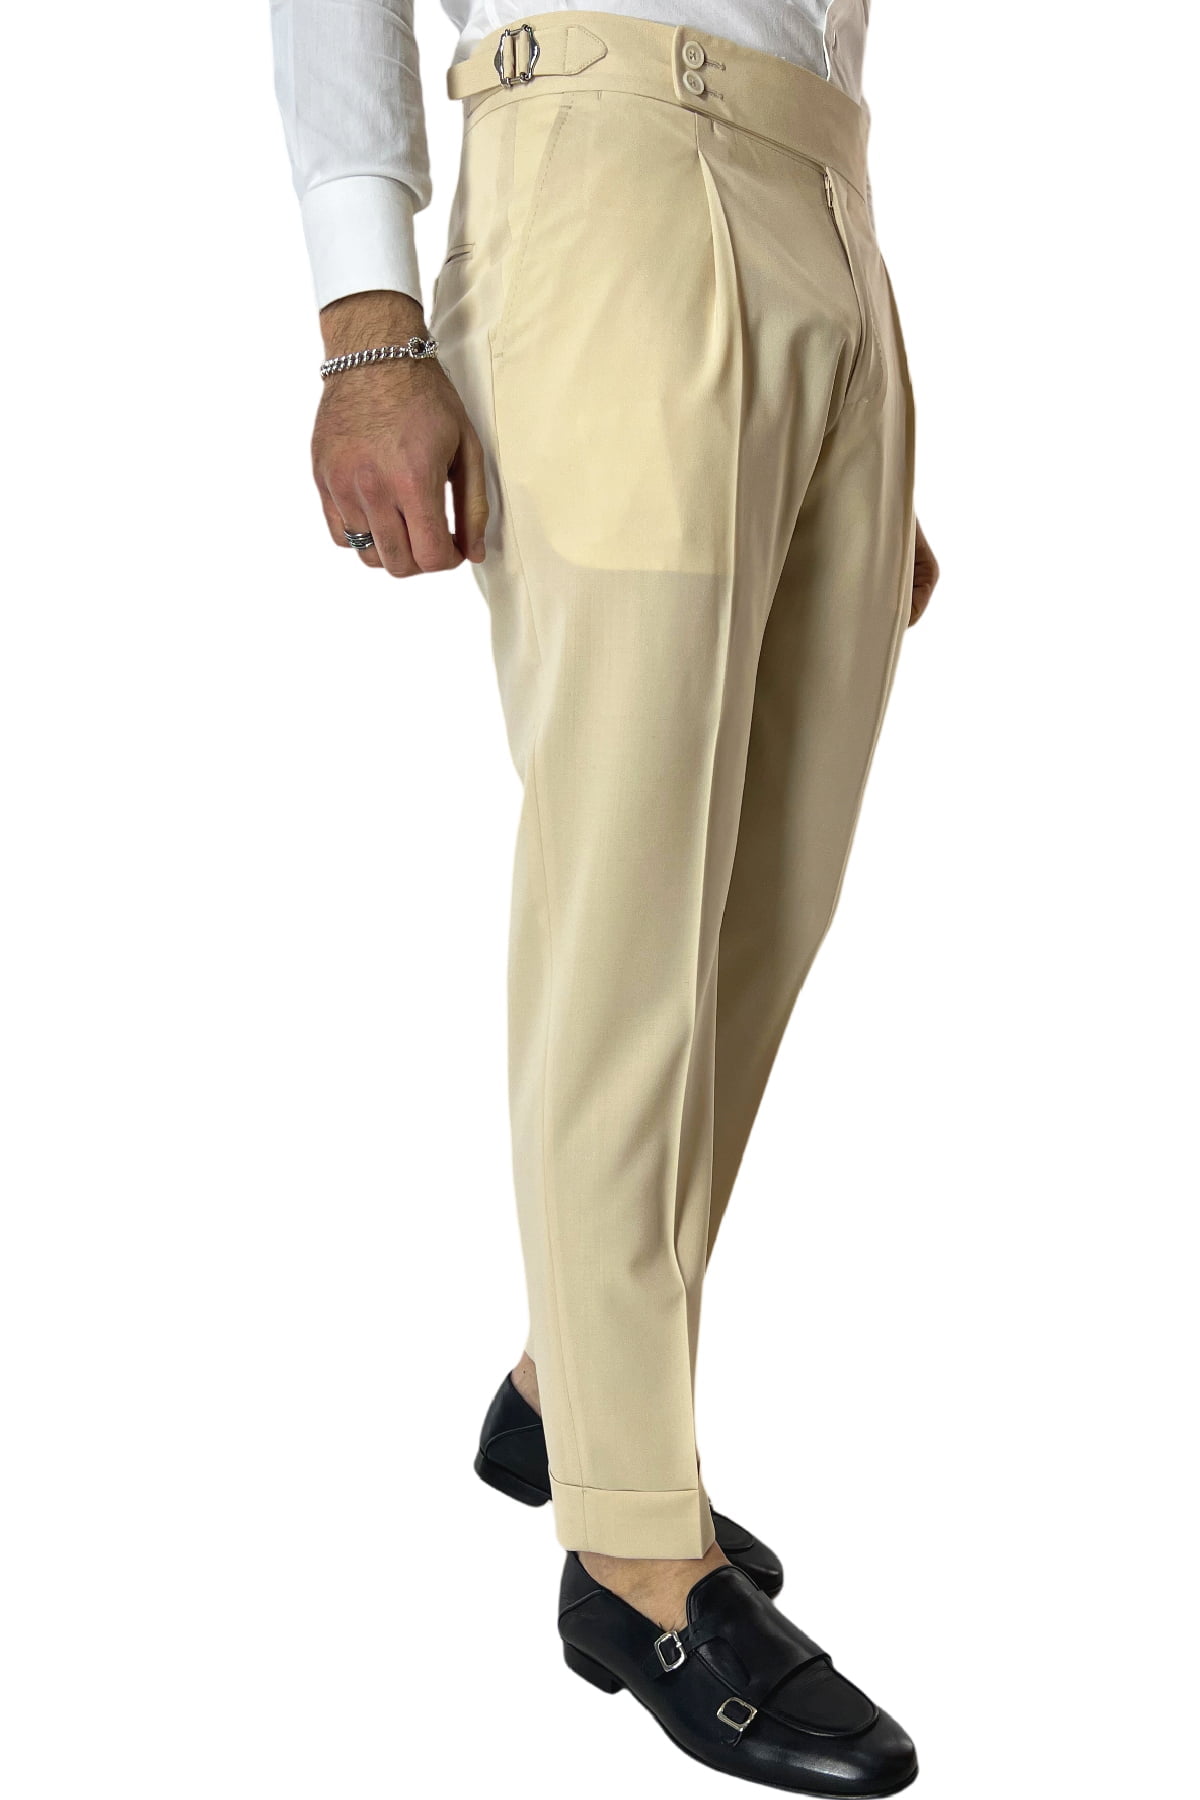 Pantalone uomo beige chiaro in fresco lana 100's Holland & Sherry vita alta con pinces fibbie laterali e risvolto 4cm